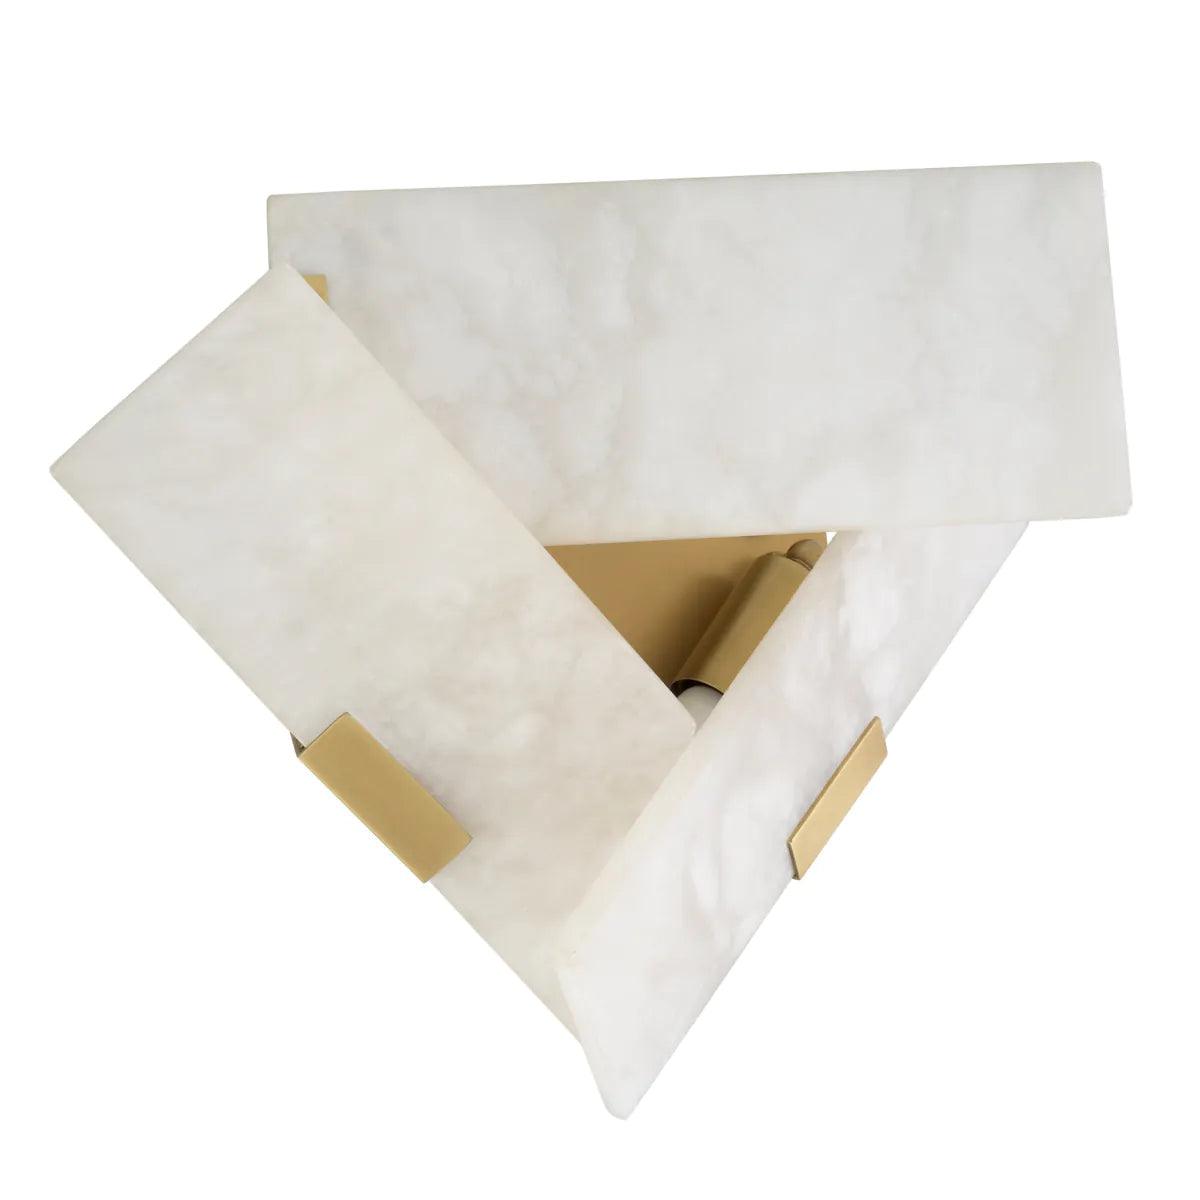 Lampa ścienna BELLA BIANCO alabaster z mosiężnym wykończeniem Eichholtz    Eye on Design